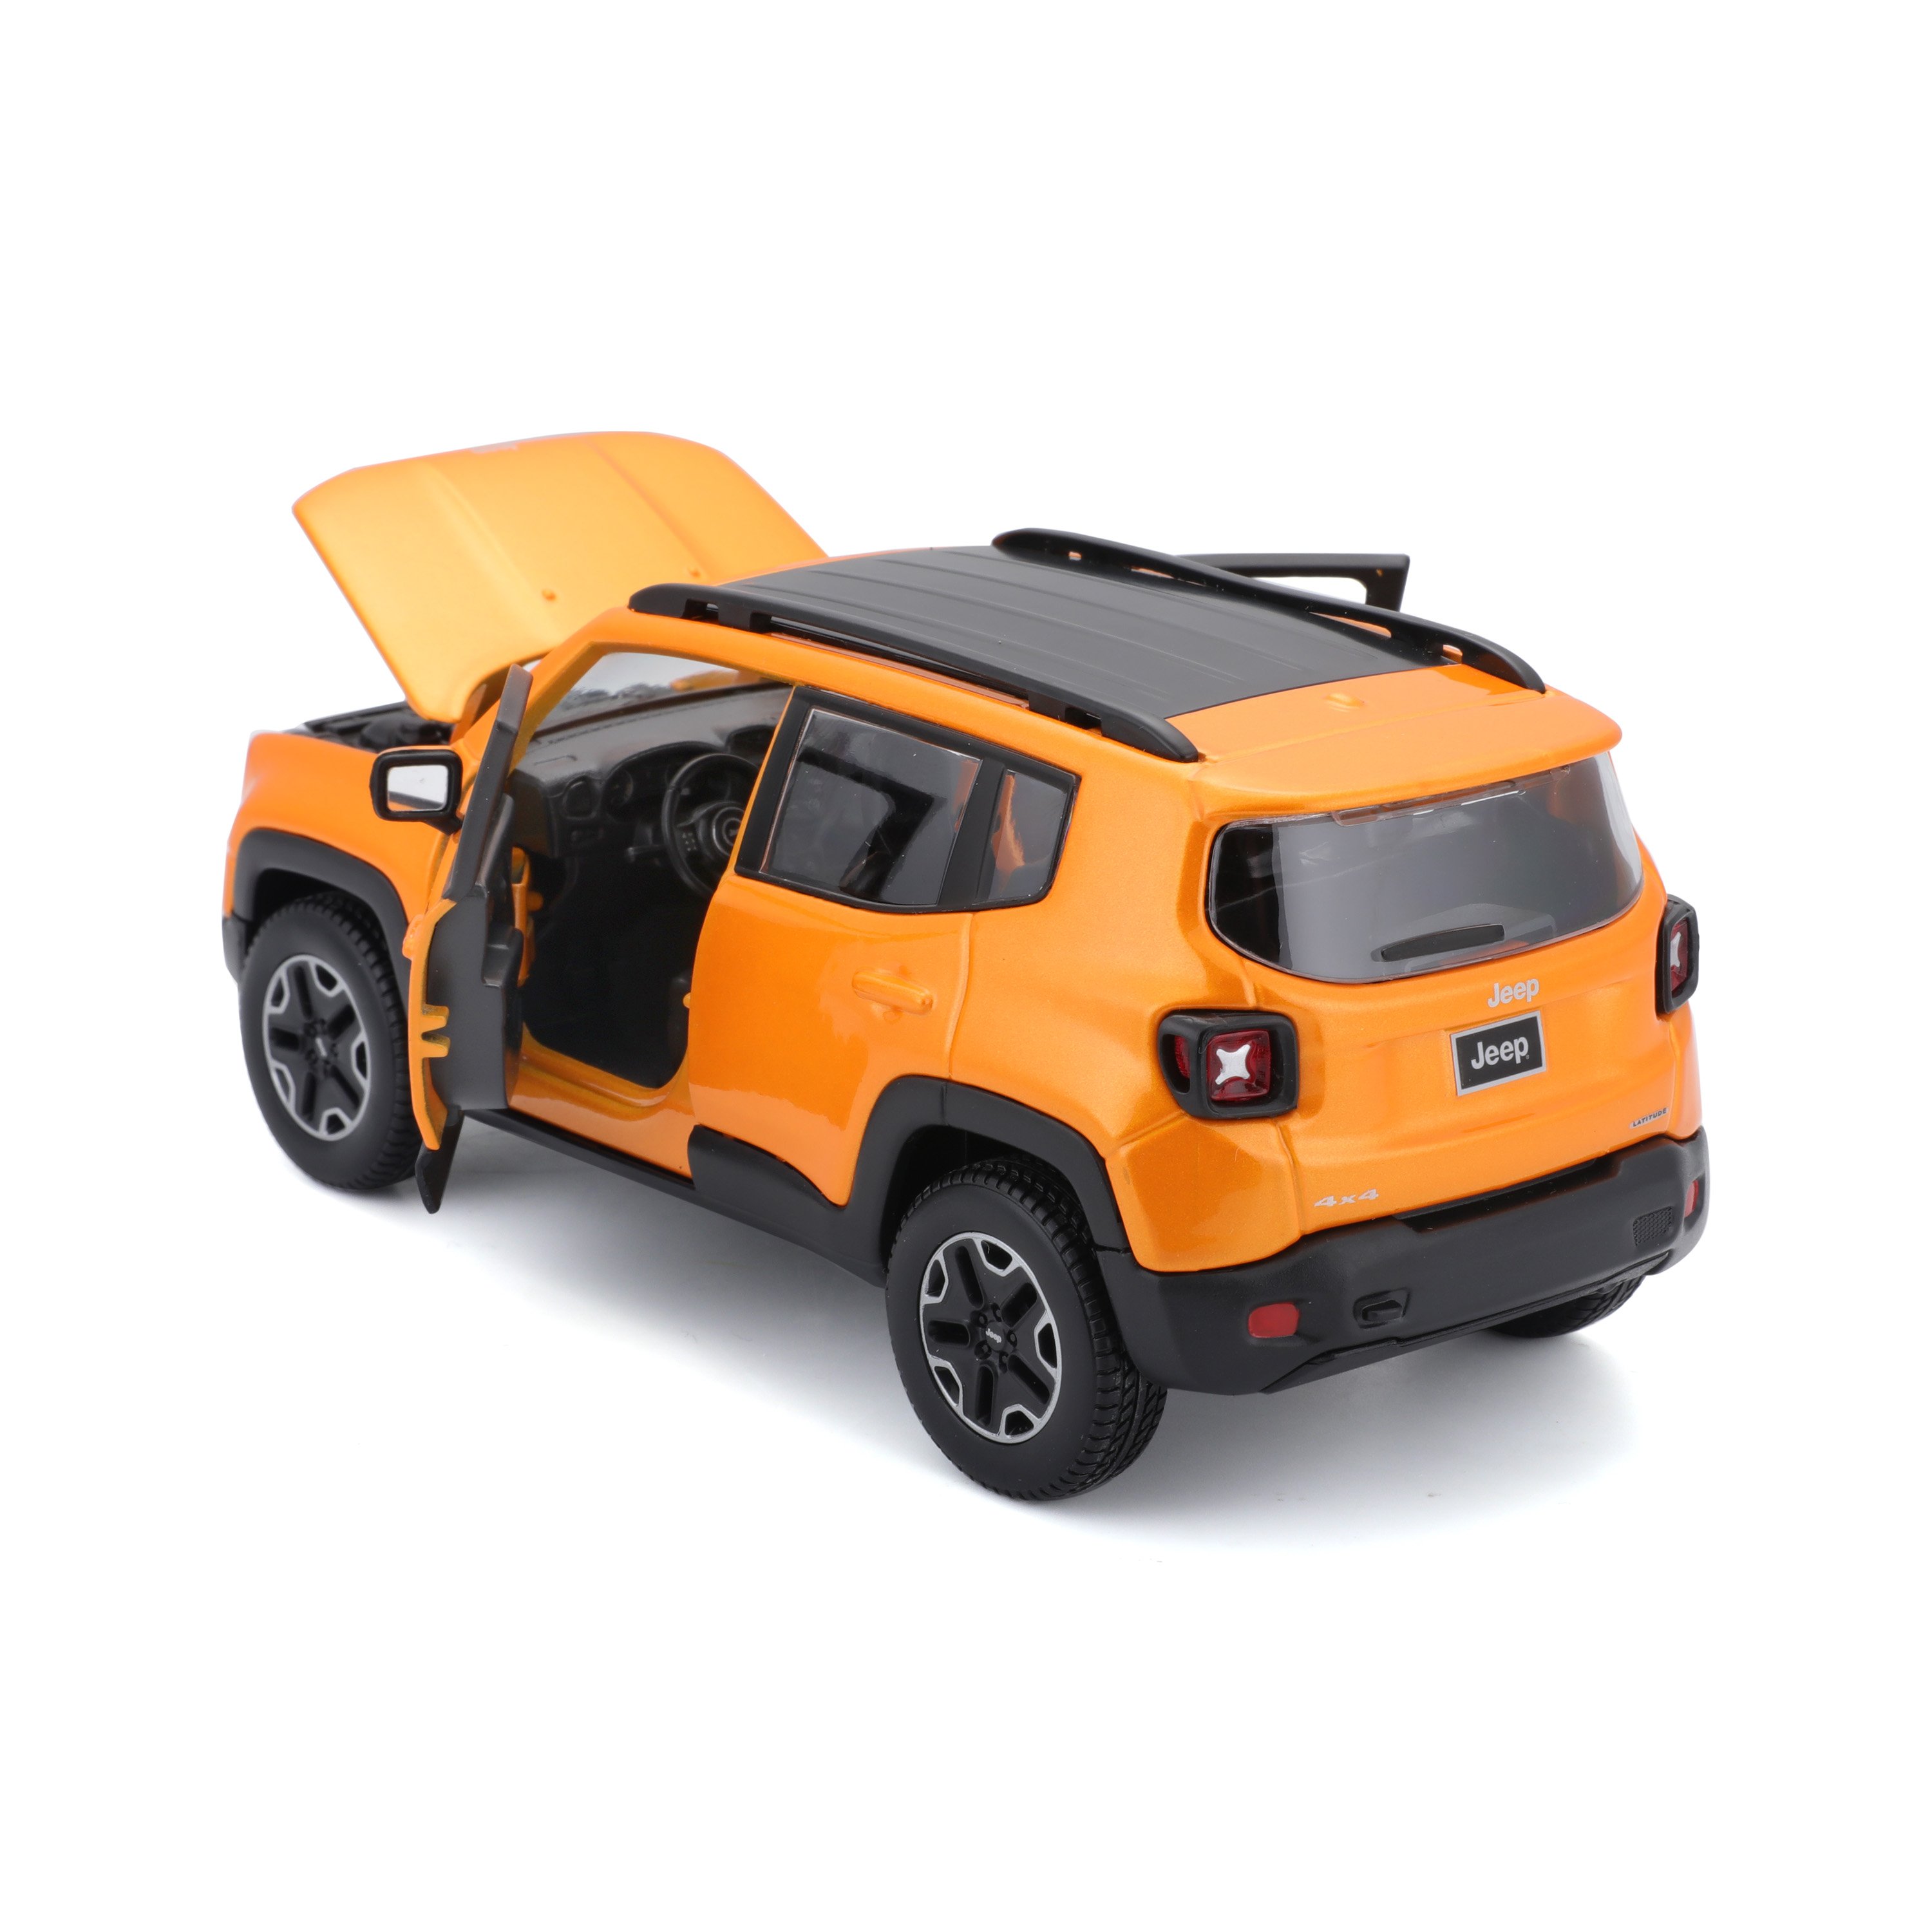 Игровая автомодель Maisto Jeep Renegade, оранжевый металлик, 1:24 (31282 orange) - фото 4